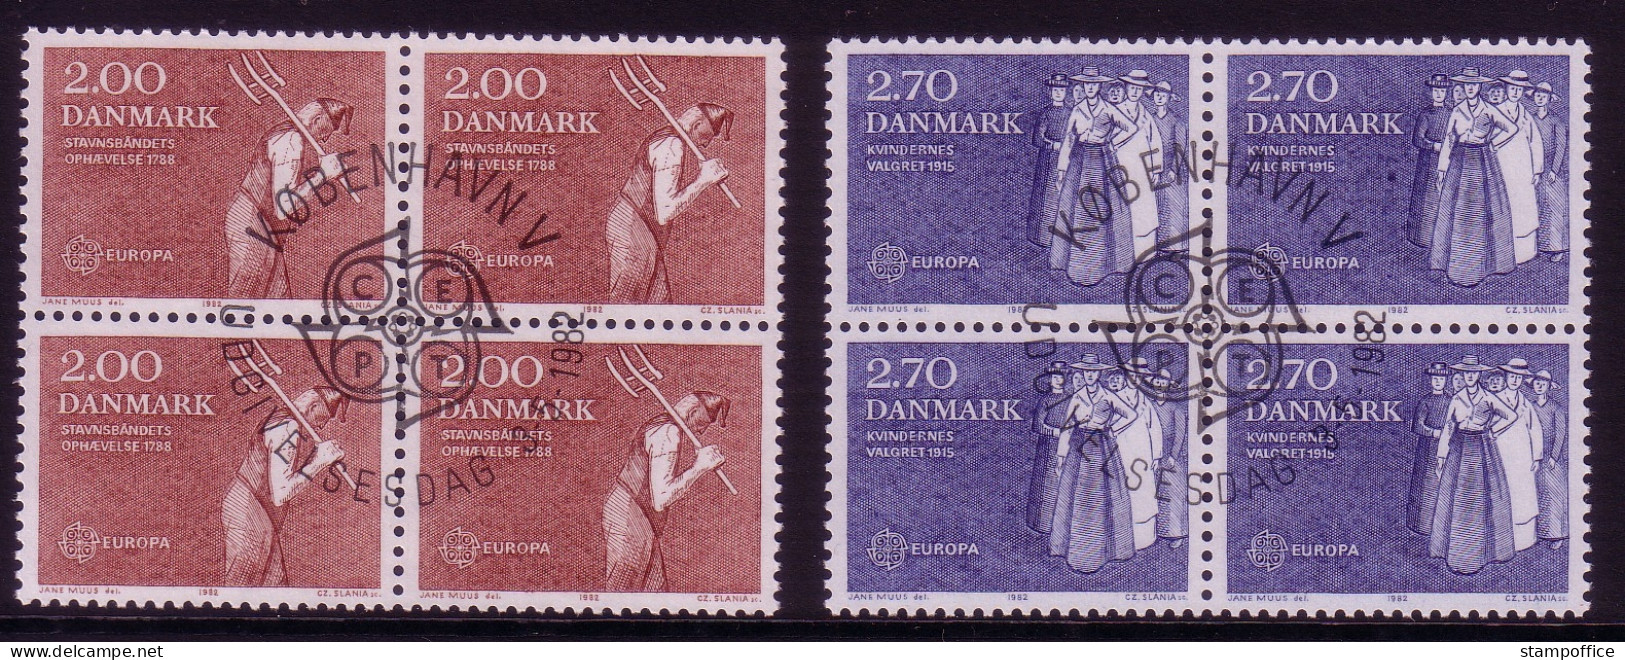 DÄNEMARK MI-NR. 749-750 O 4er BLOCK EUROPA 1982 - HISTORISCHE EREIGNISSE FRAUENWAHLRECHT - 1982